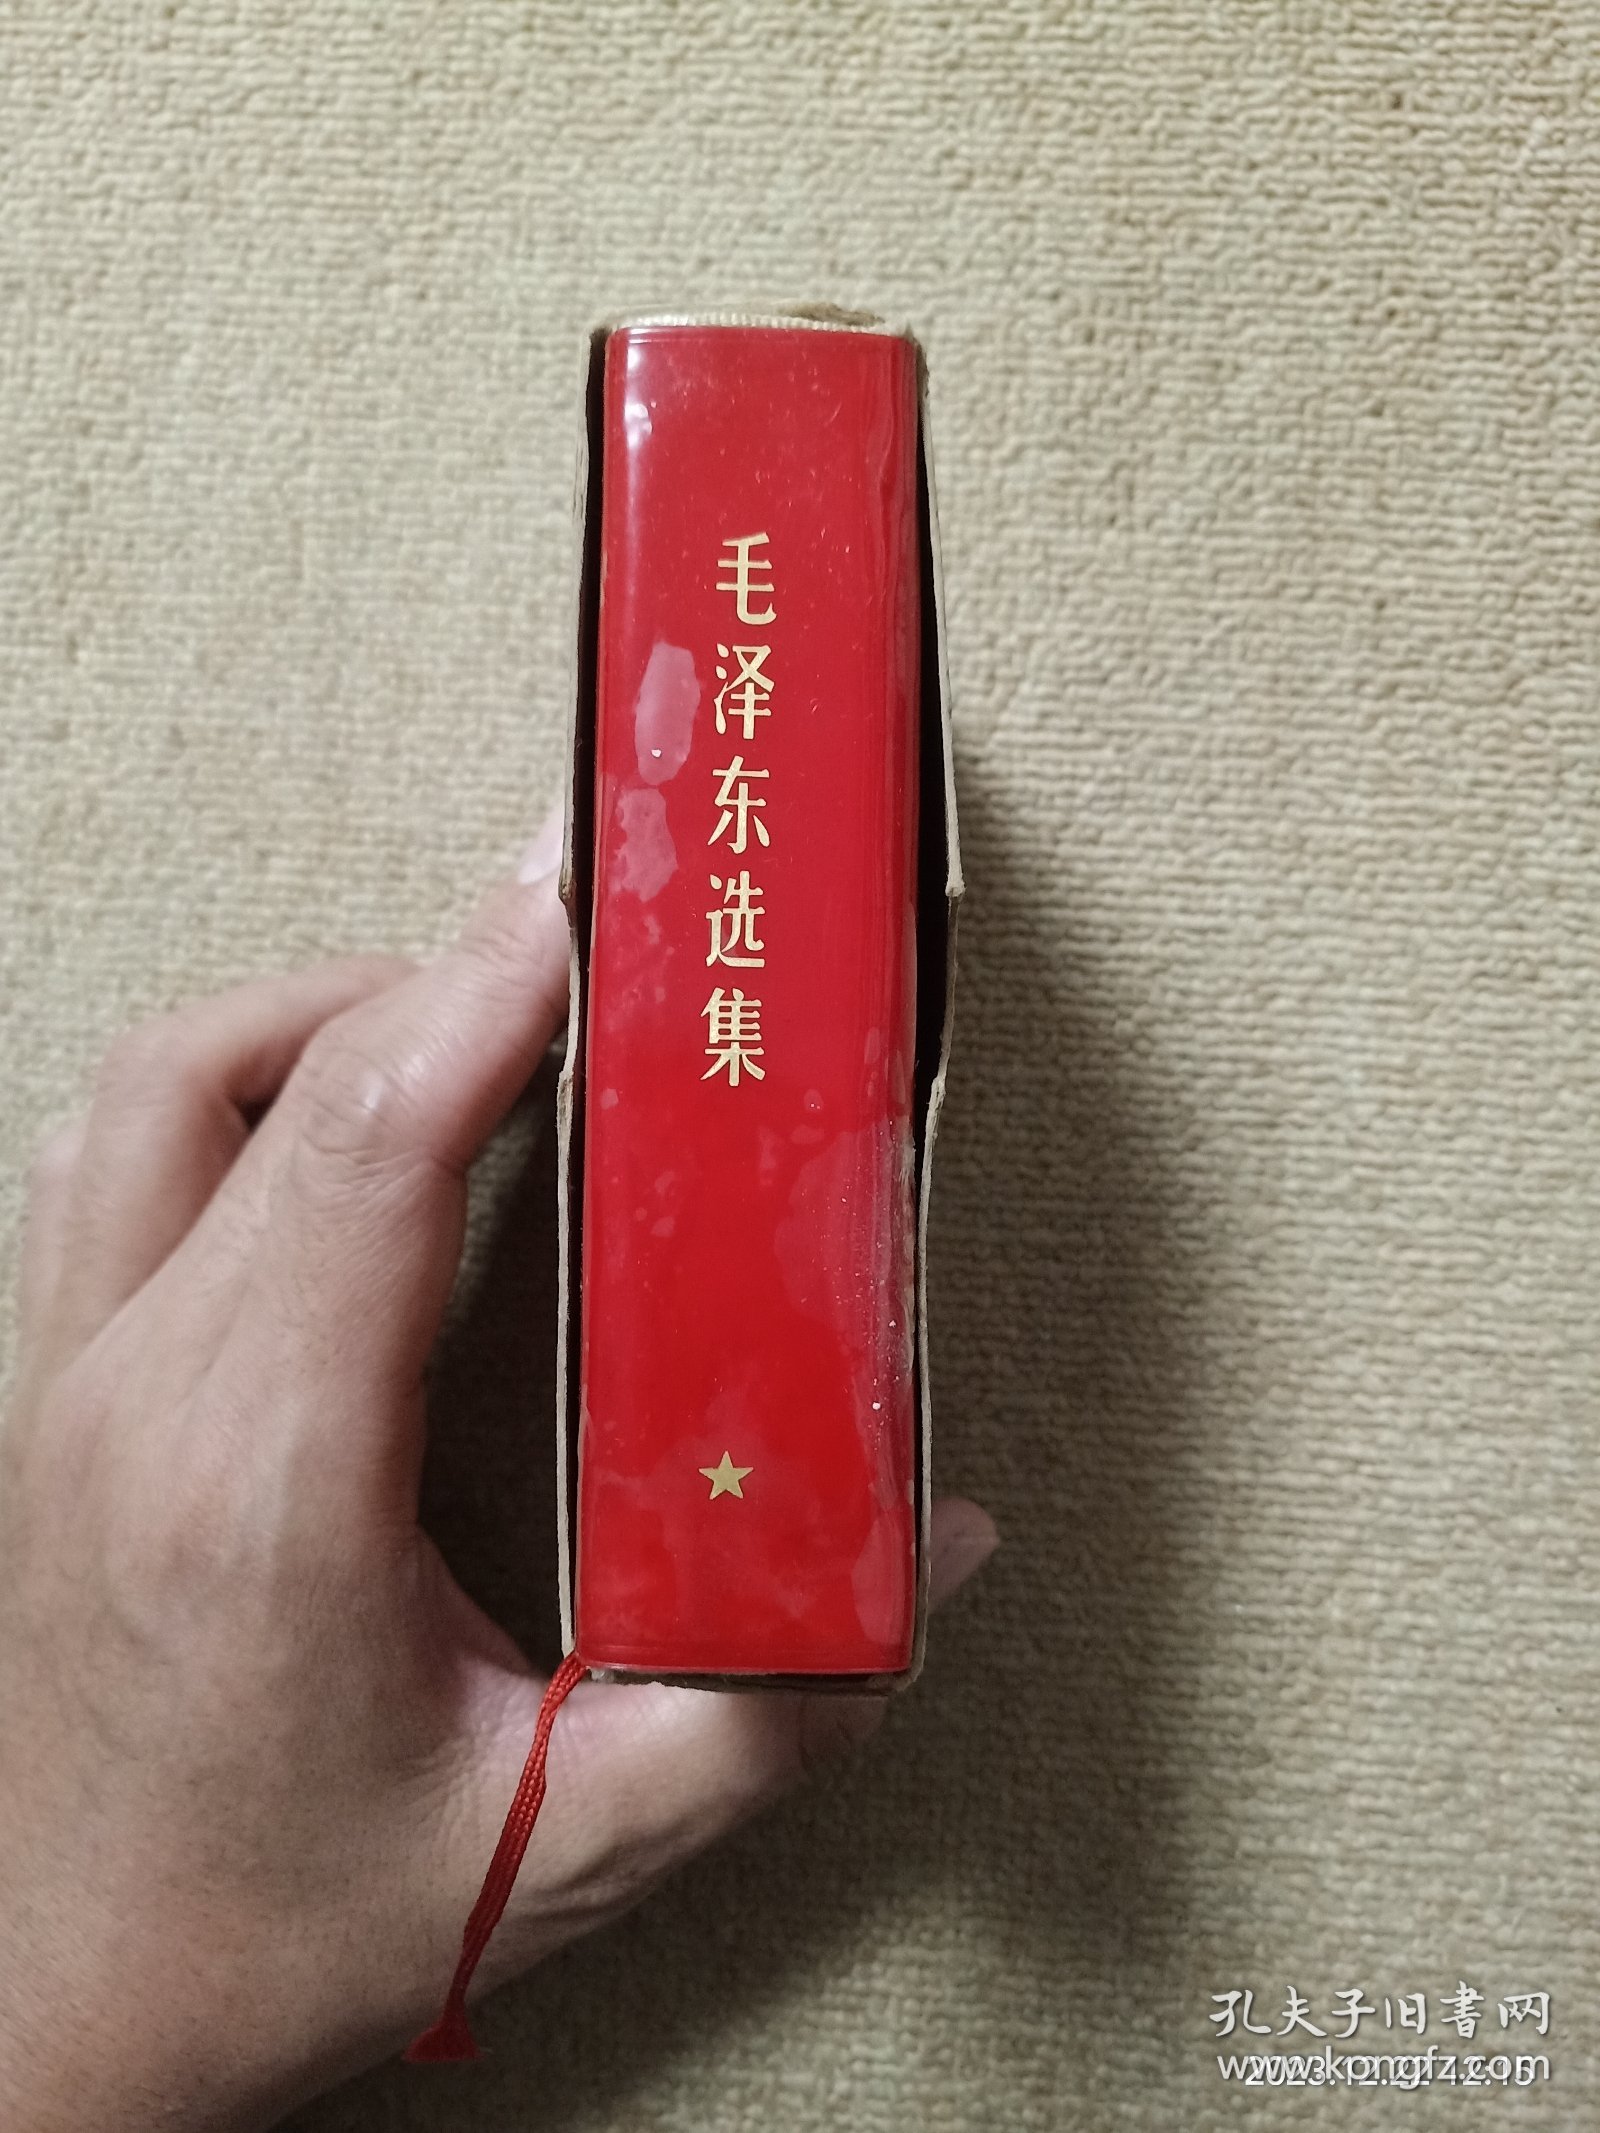 【瑕疵见图】毛泽东选集一卷本